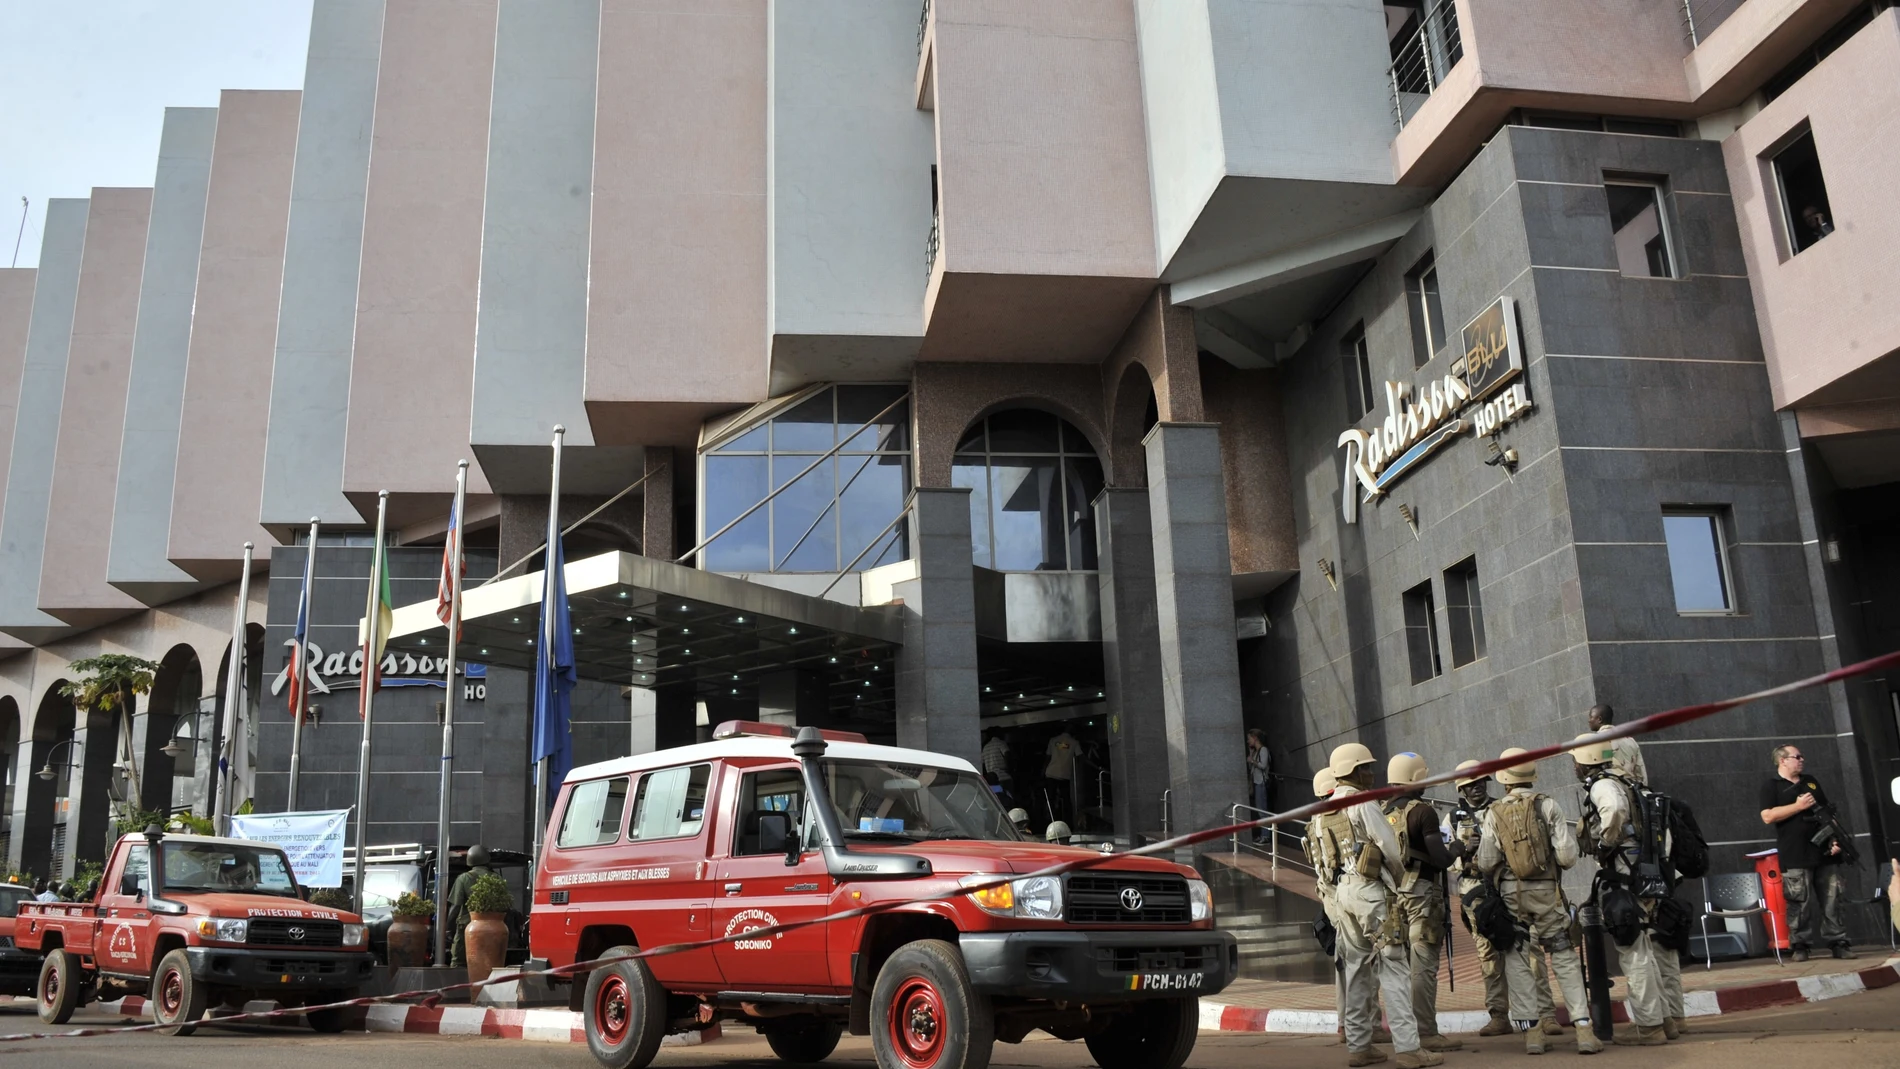 Hotel de Mali en el que se ha producido el ataque